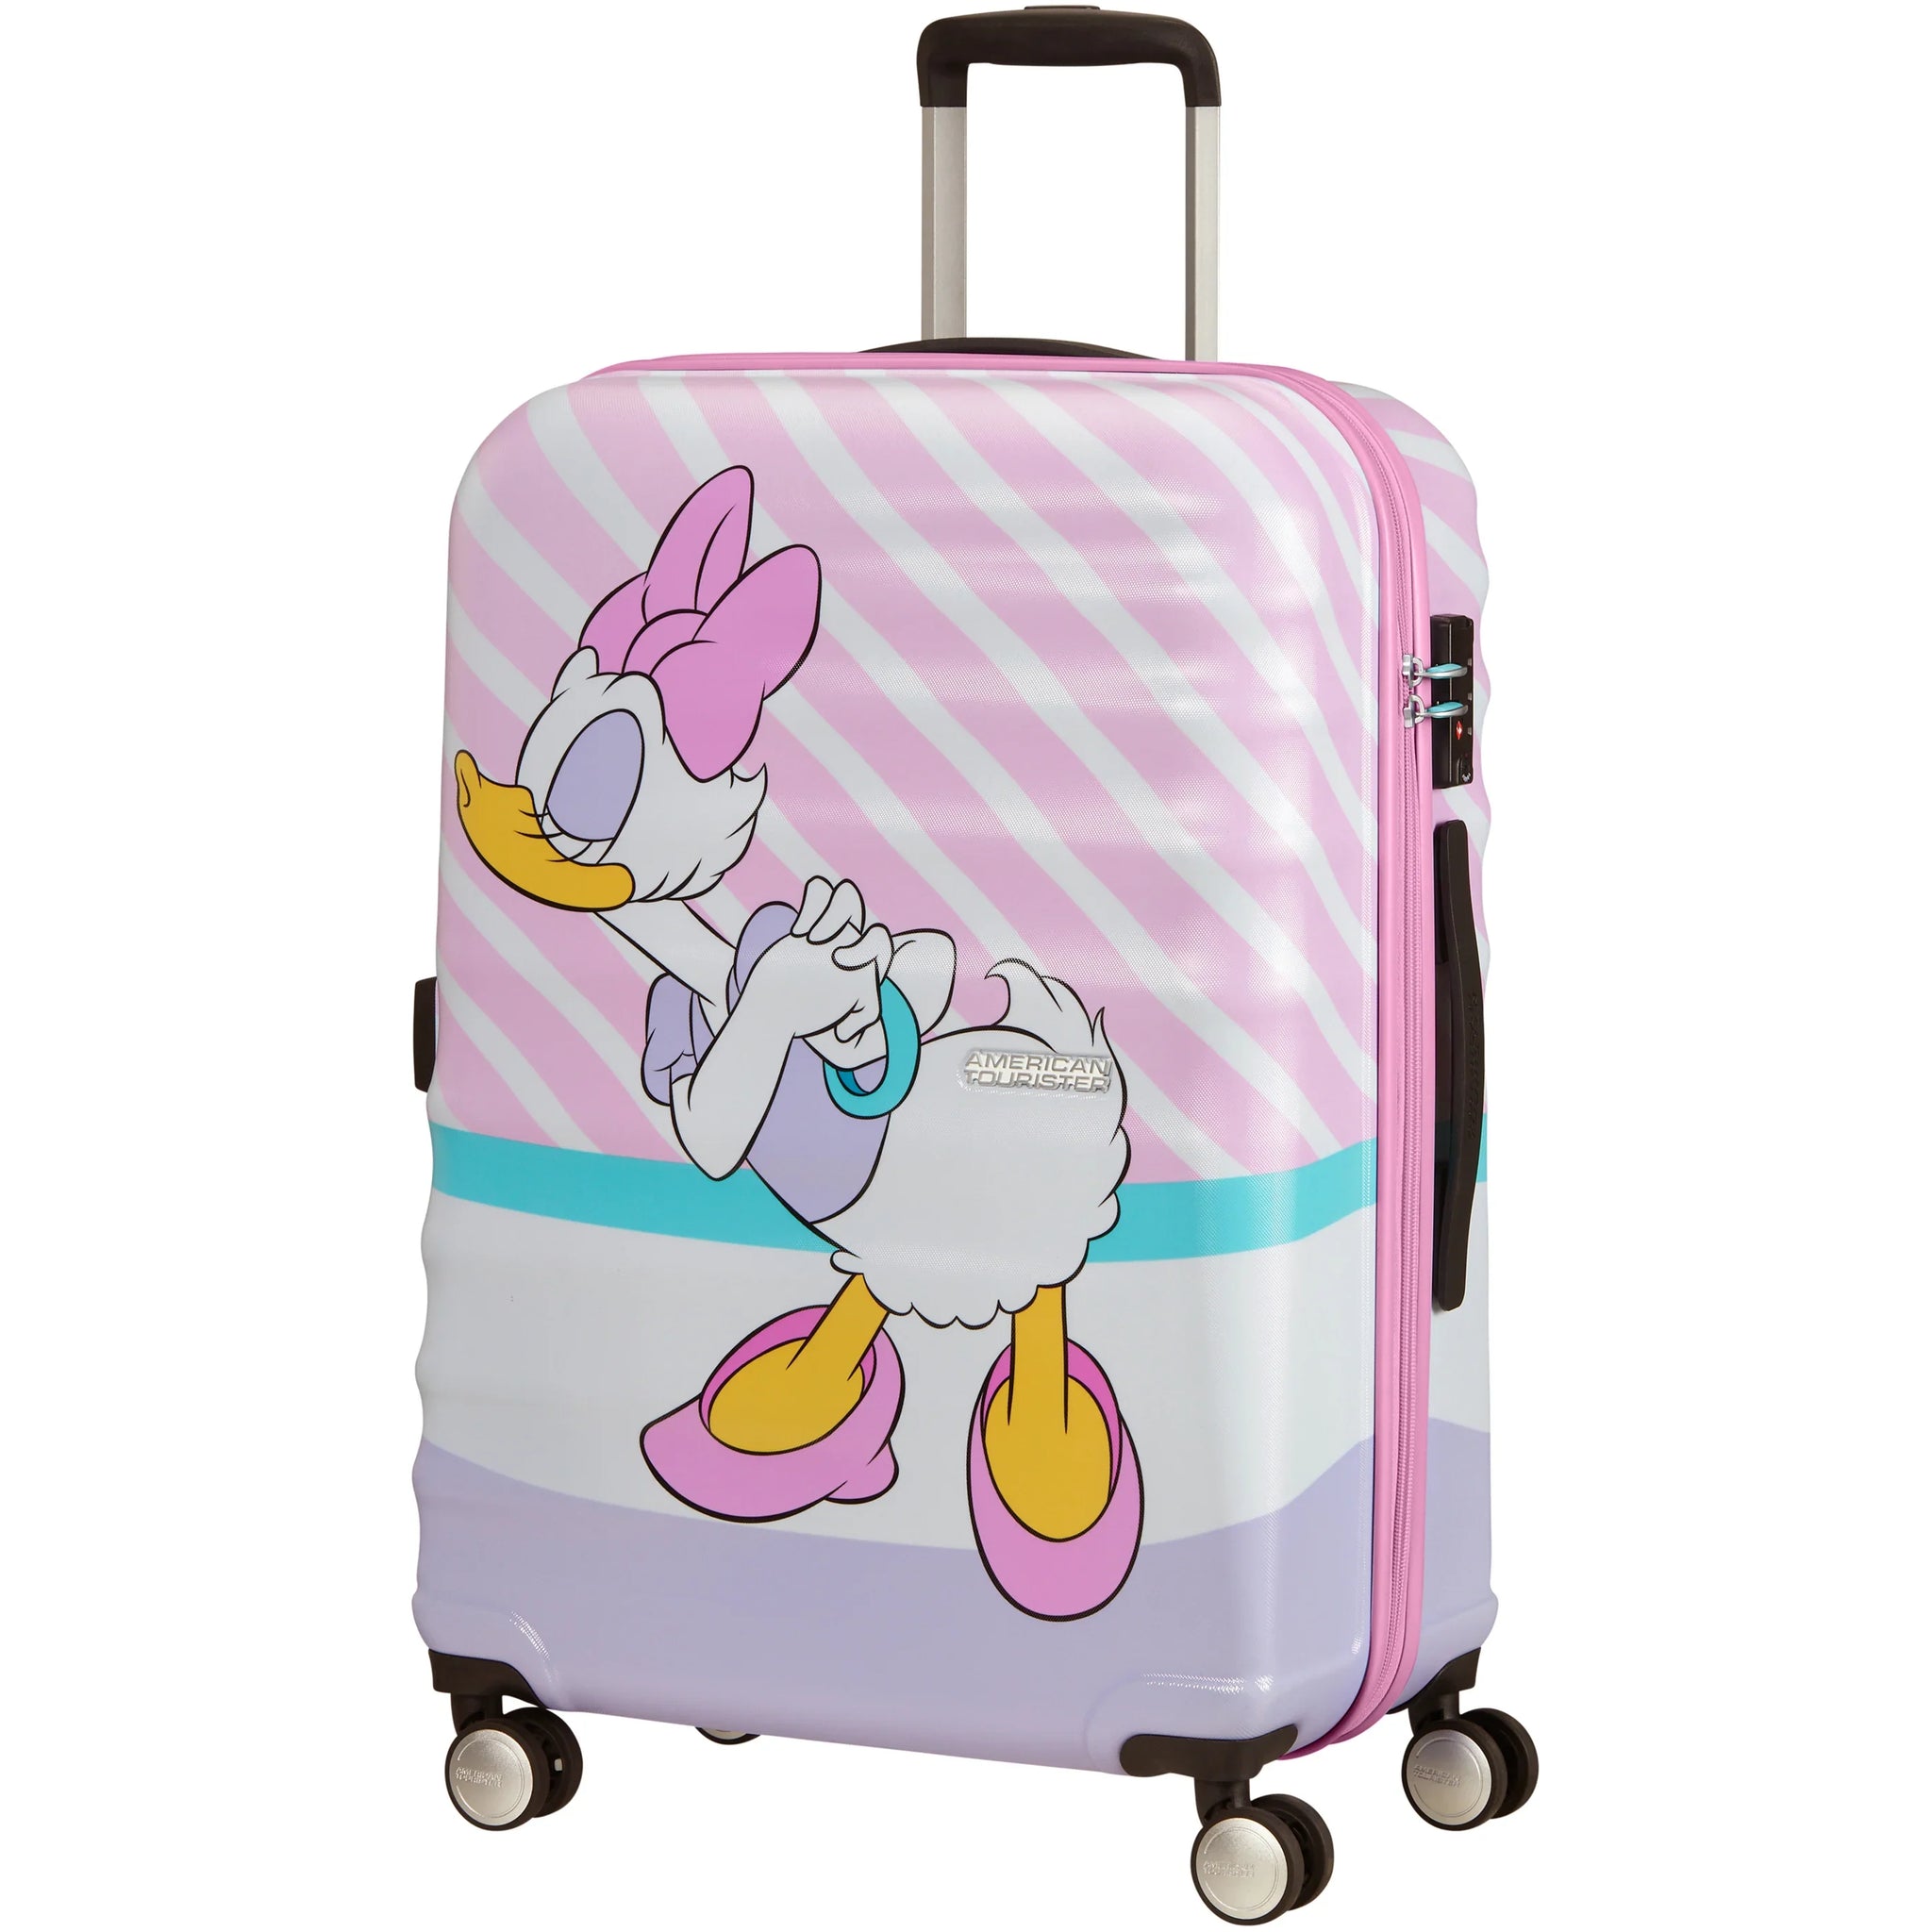 American Tourister Wavebreaker 4-Rollen-Trolley cm pink 67 daisy kiss Disney 